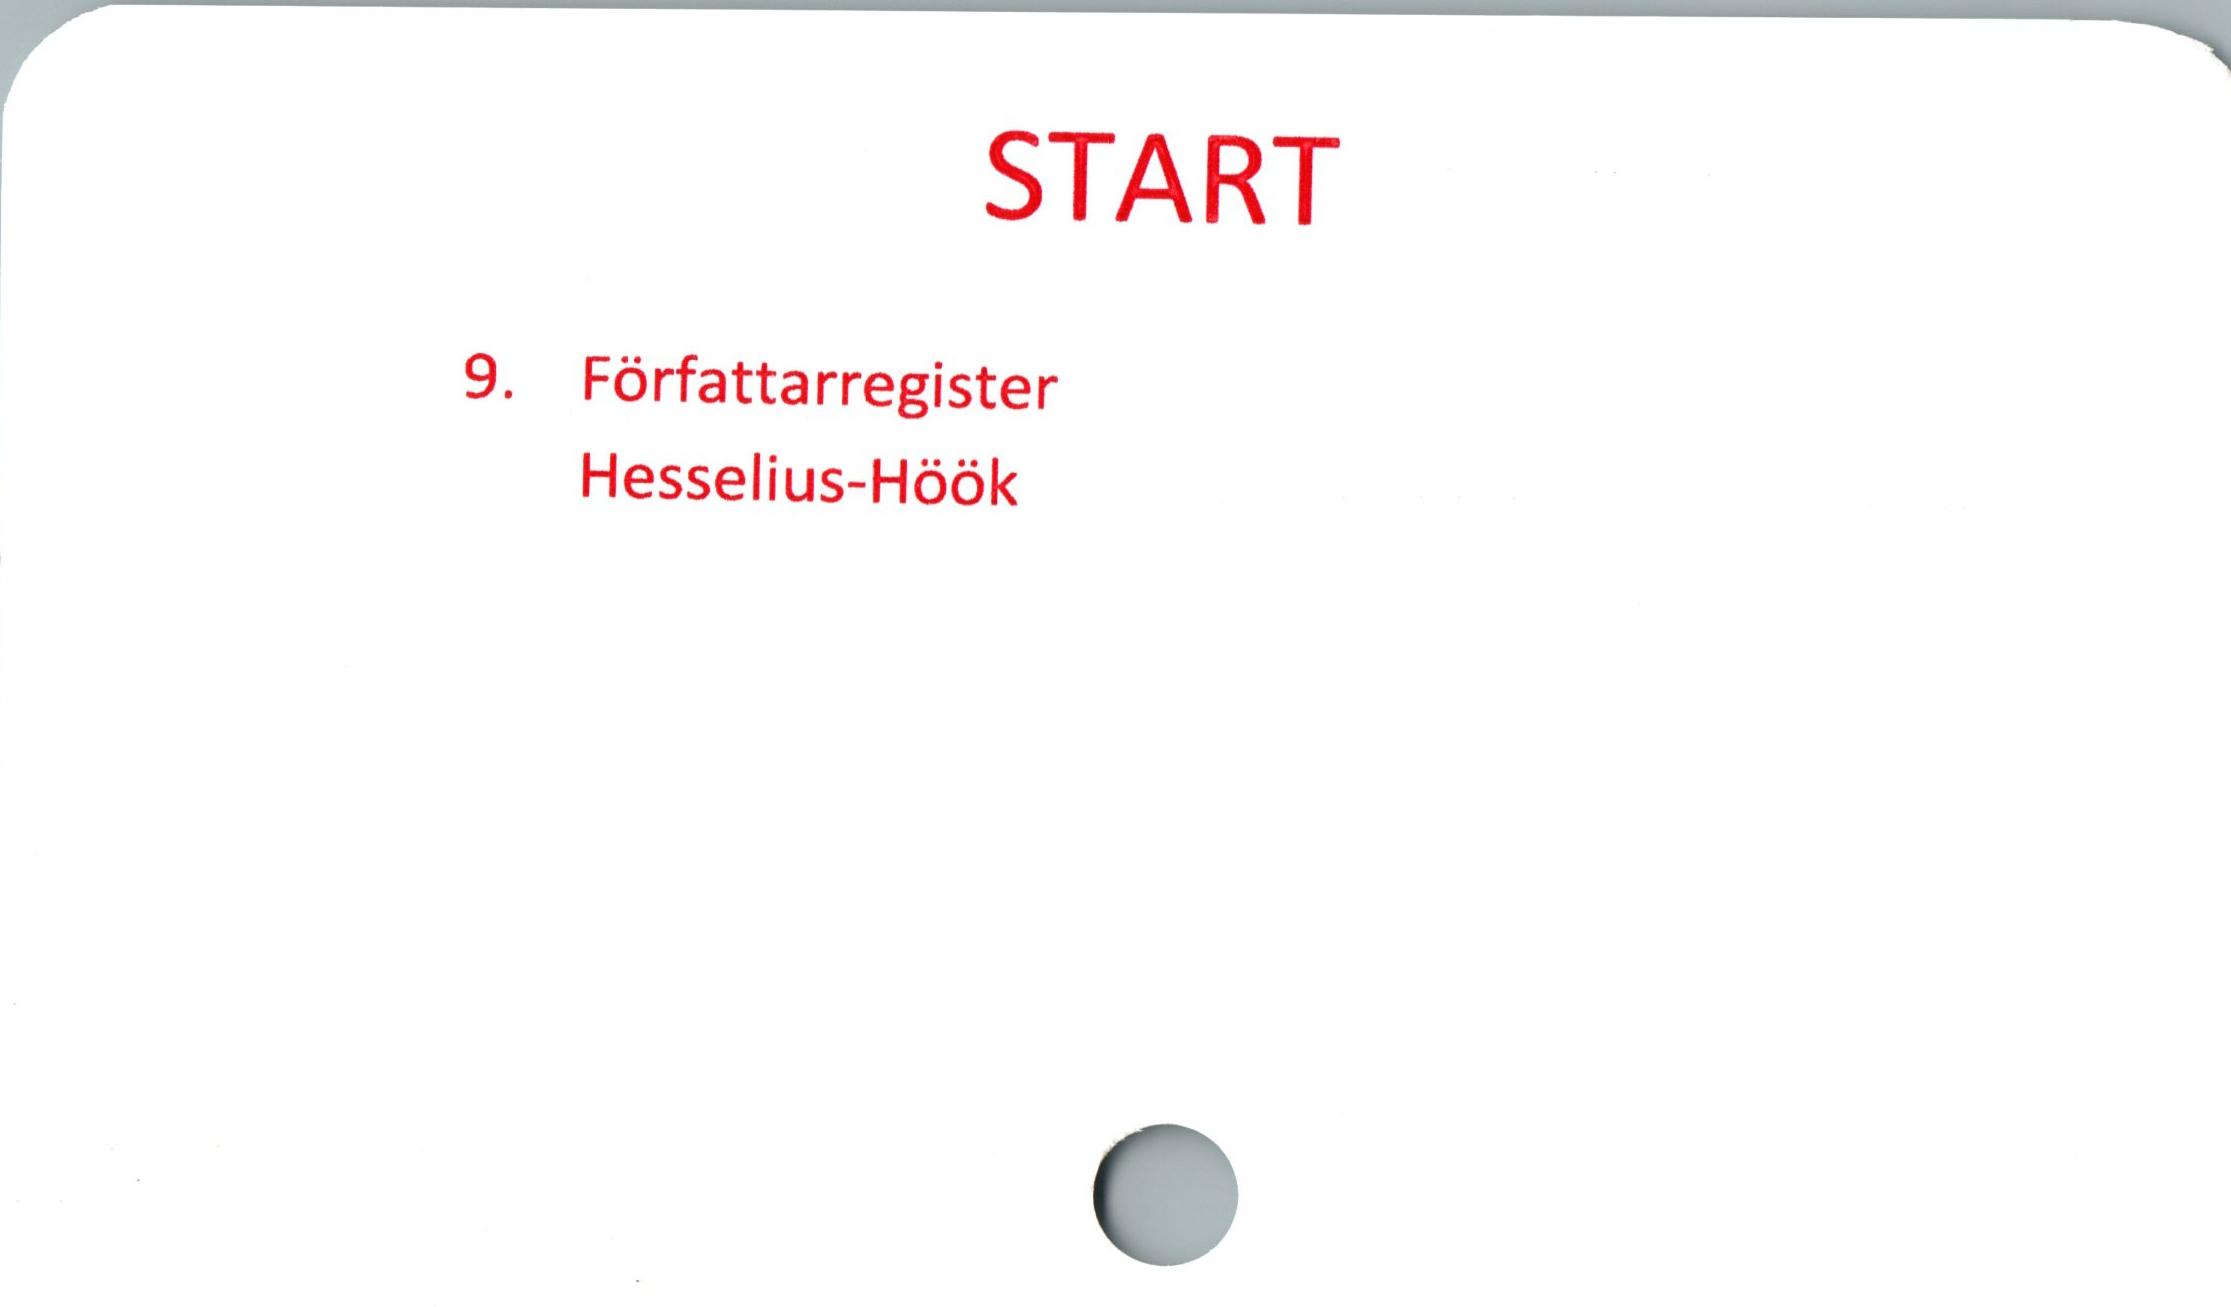  ﻿

START

9. Författa rregister
Hesselius-Höök